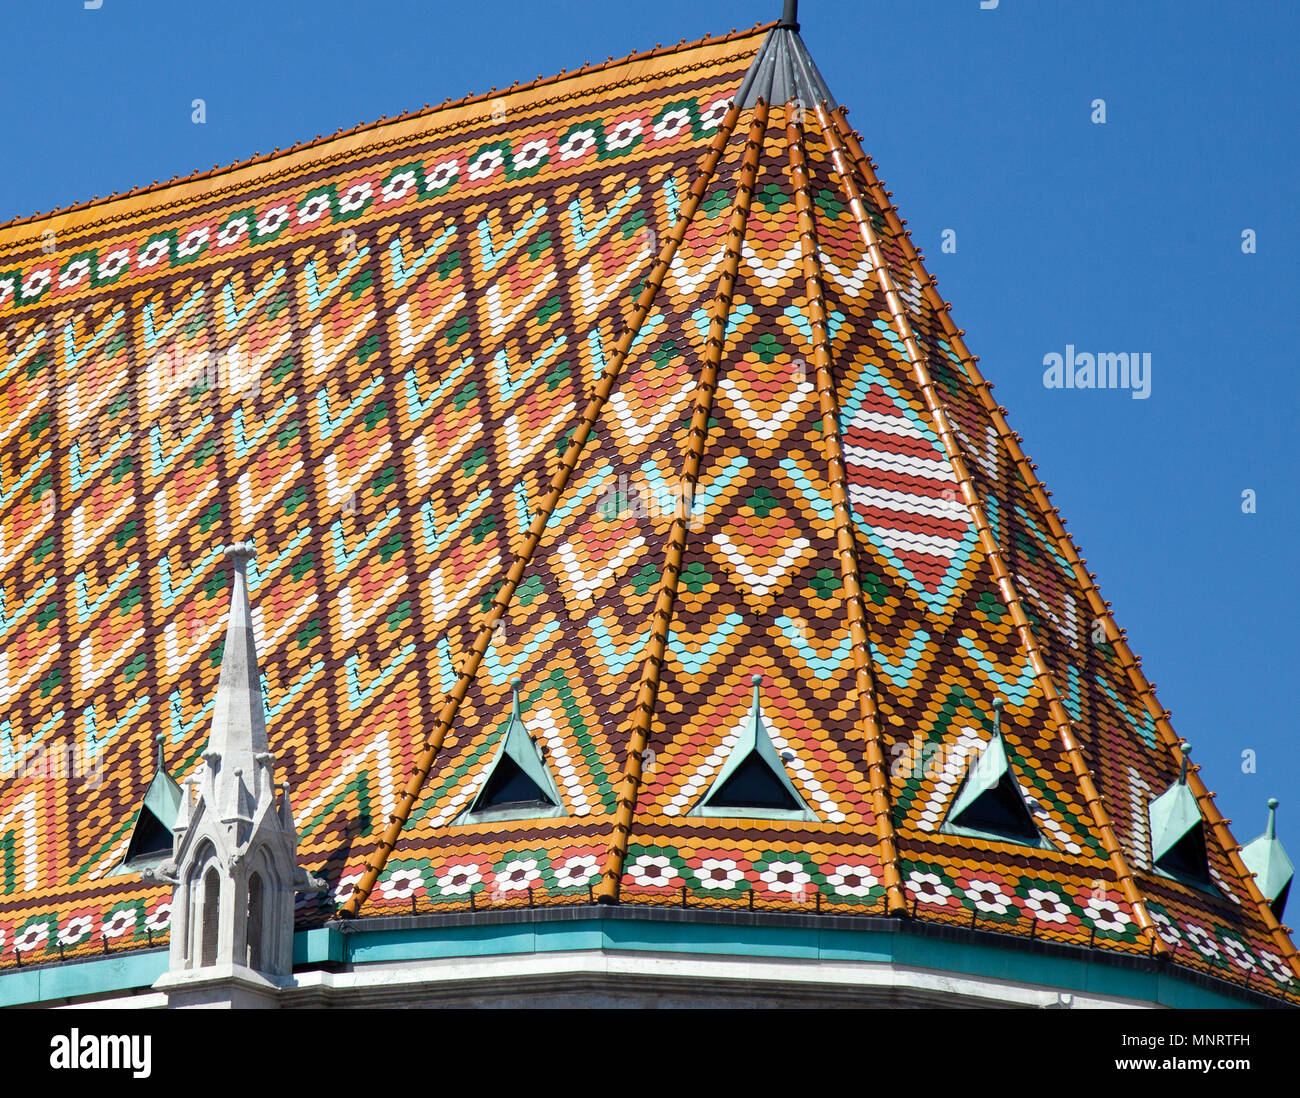 Die reich verzierte keramische Fliesen Dach der Matthias Kirche Kronen die Fischerbastei auf Buda Hill, Budapest, Ungarn. Stockfoto